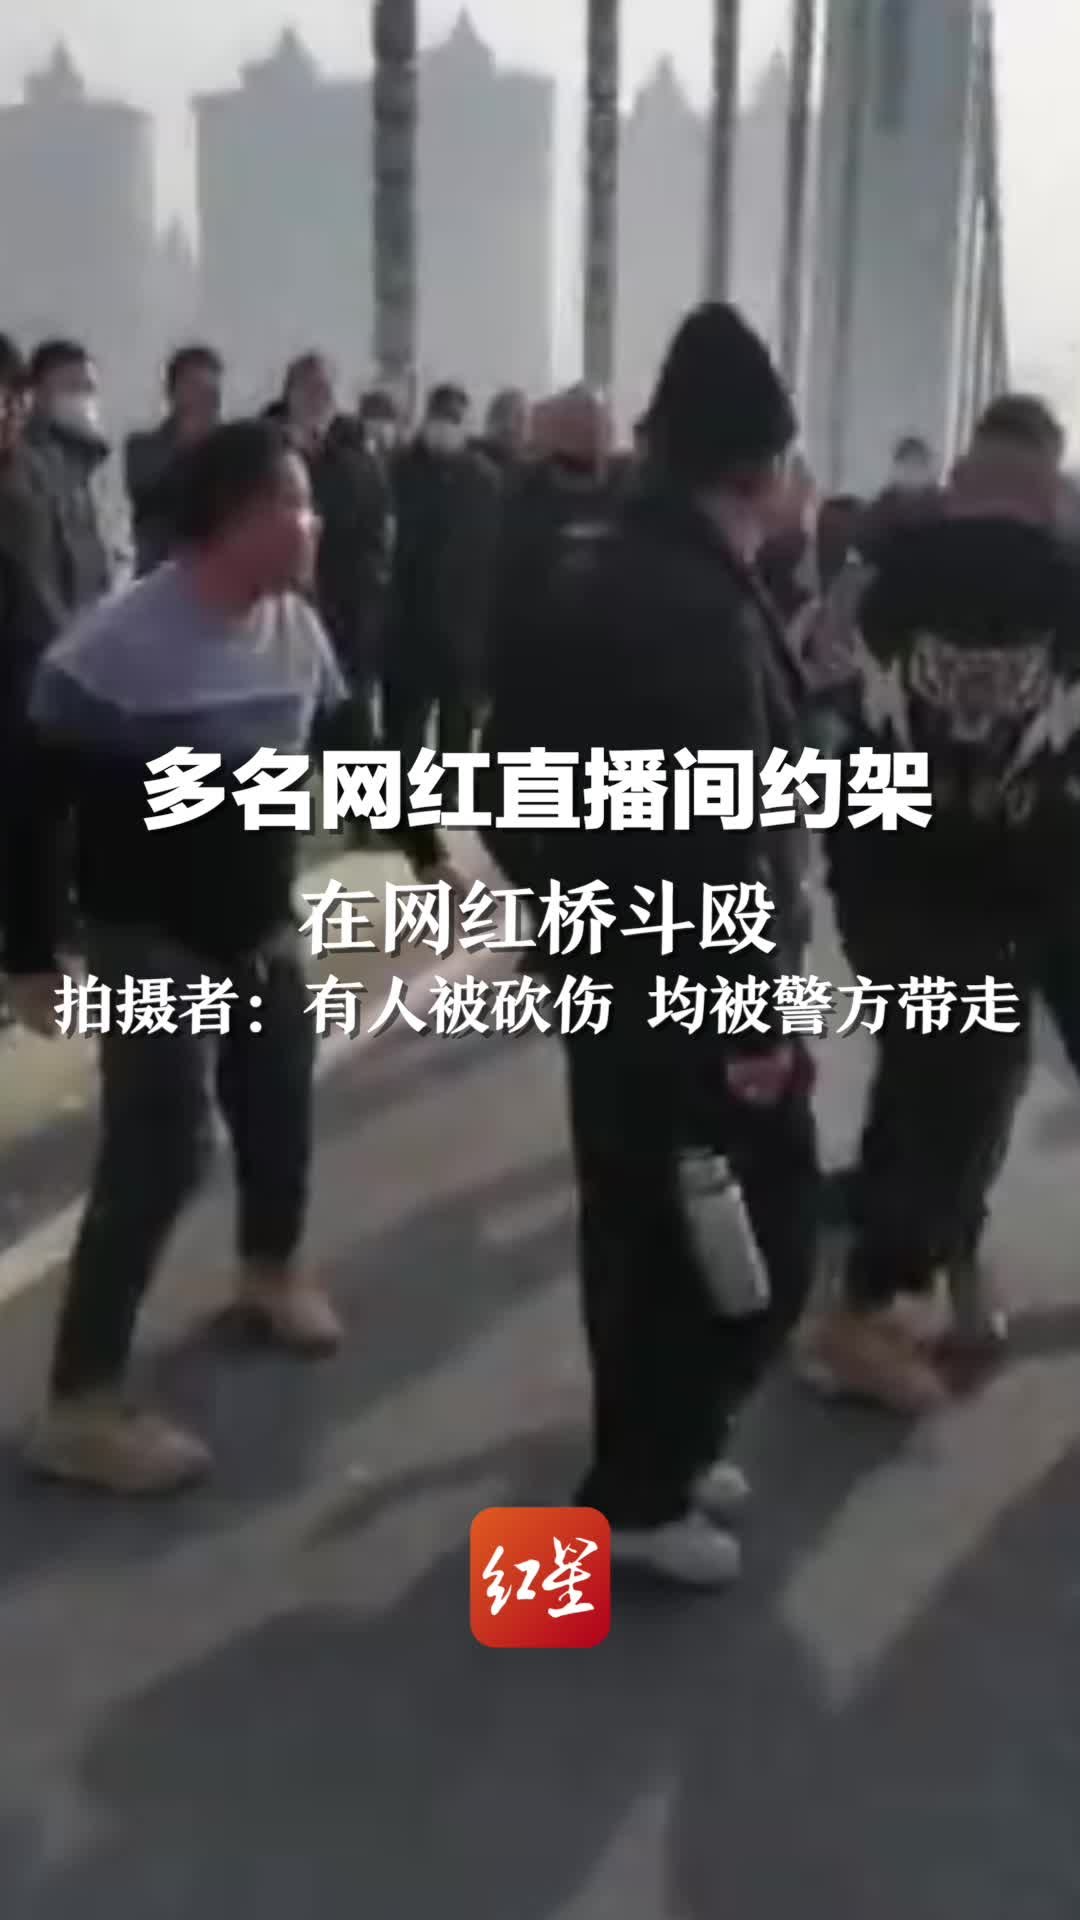 多名网红直播间约架在网红桥斗殴，拍摄者：有人被砍伤 均被警方带走